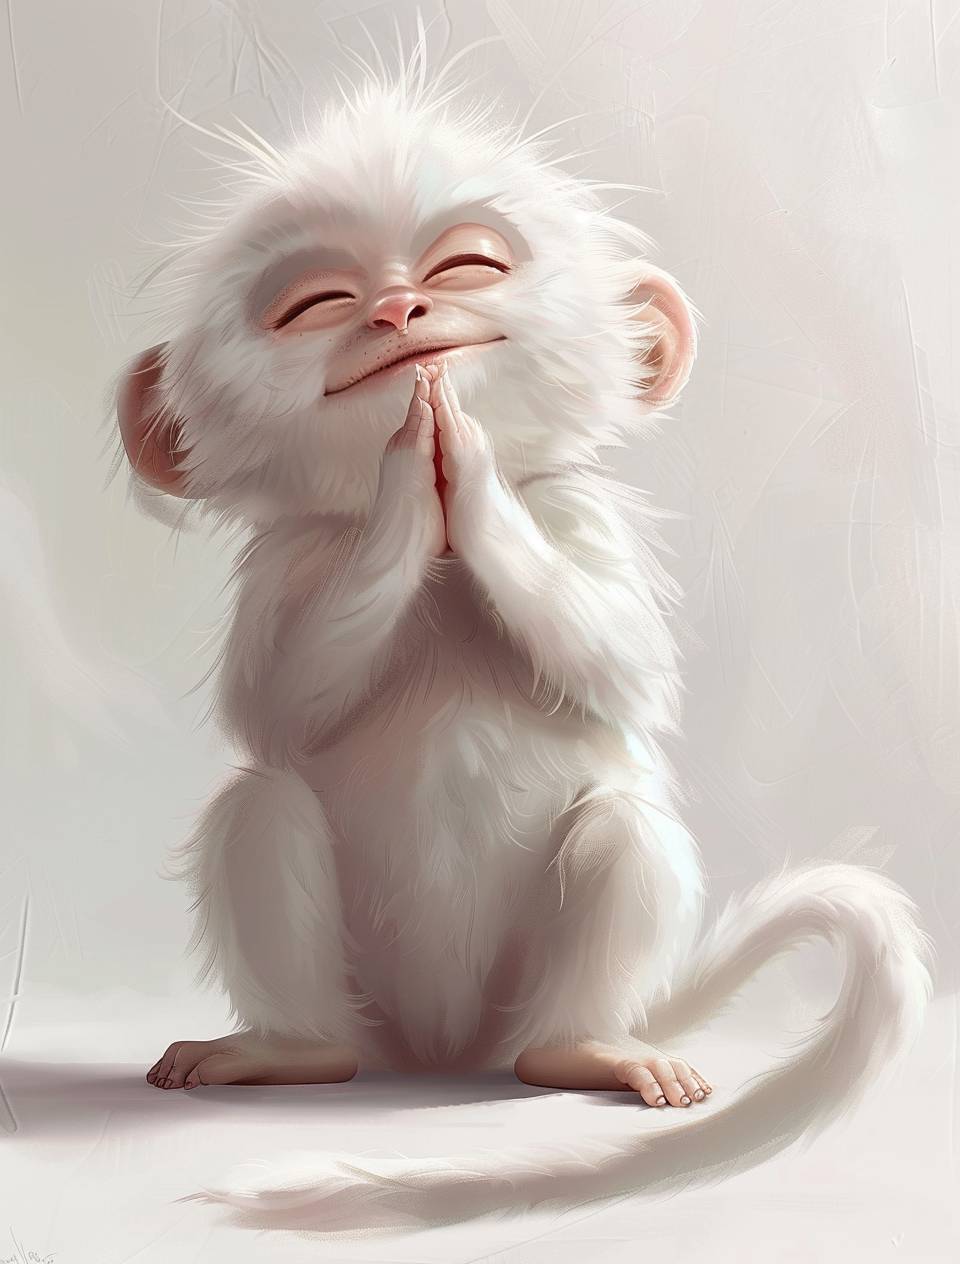 かわいらしい白い体の太った猿で、笑顔でその目を閉じ、手を胸に合わせて祈りを捧げています。白く清潔な壁の背景。全身に白い毛が生え、白い耳と白い尾があります。アニメスタイルとピクサーアートスタイル。